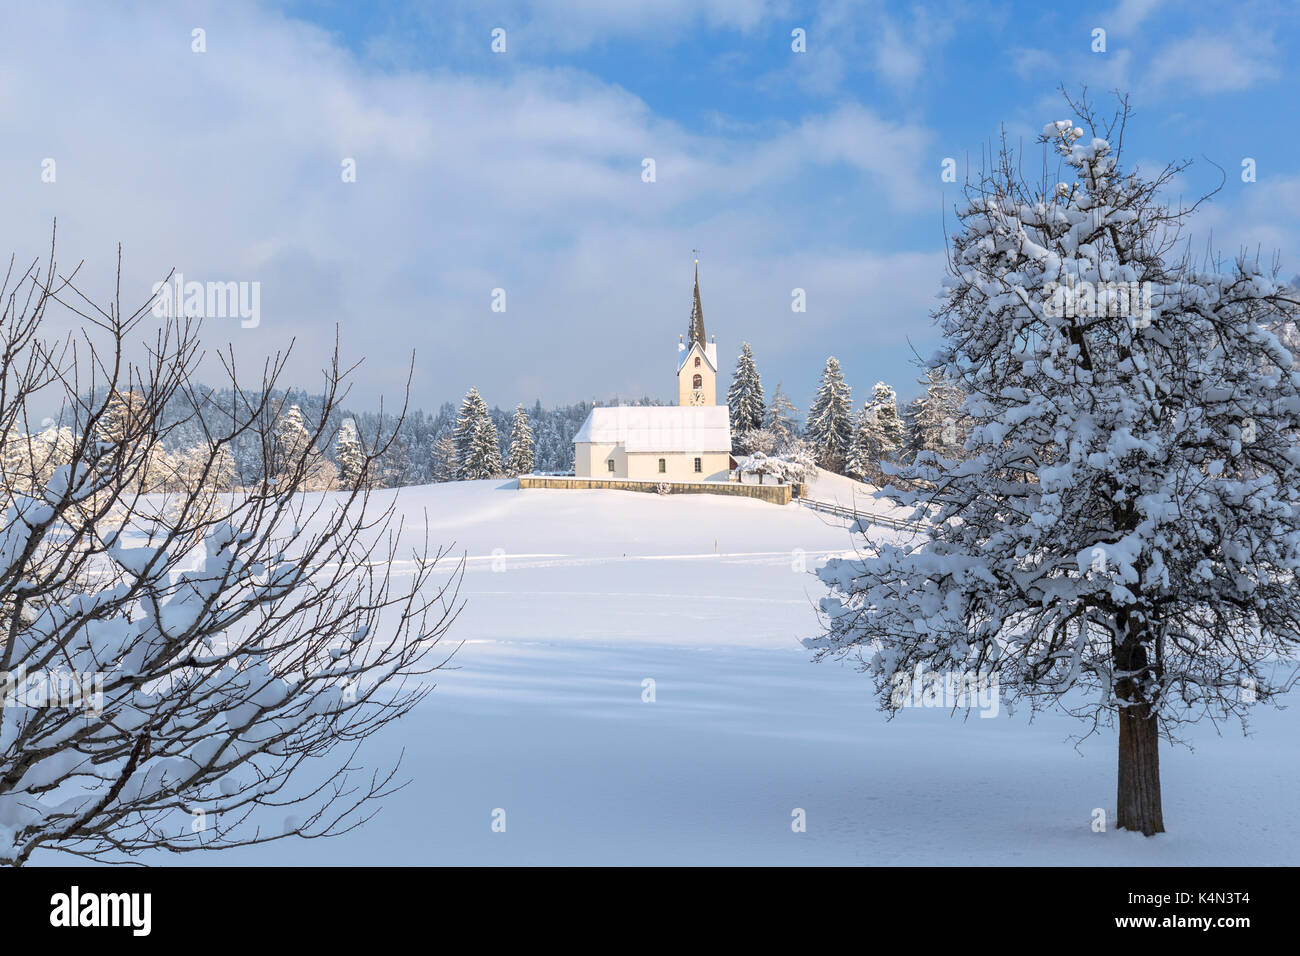 Le soleil illumine l'église de versam après une chute de neige, versam, safiental, surselva, Grisons, Suisse, Europe Banque D'Images